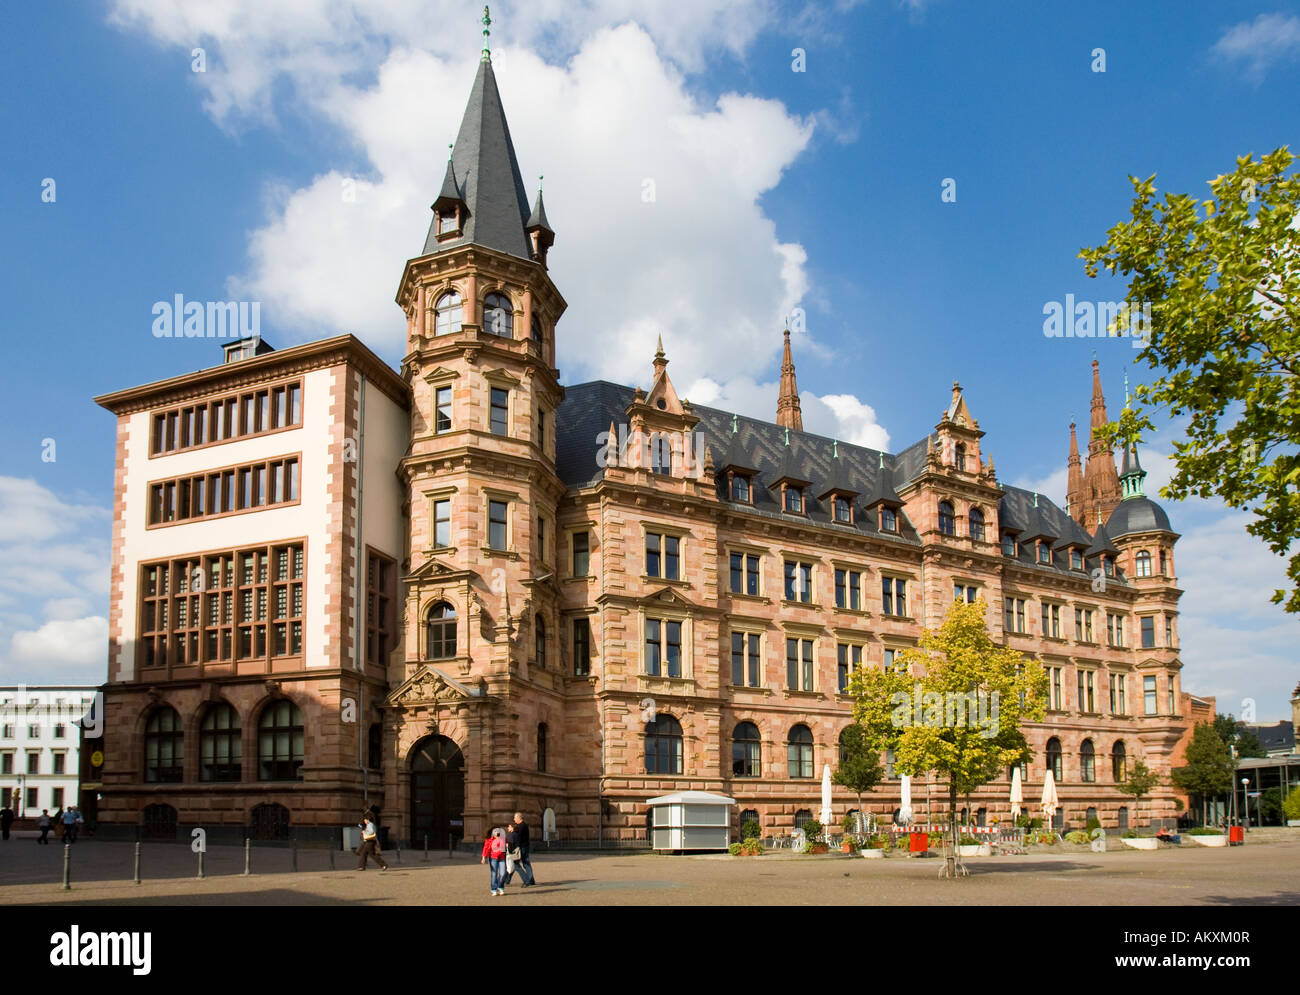 Rückseite des Wiesbadener Rathauses, Wiesbaden, Hessen, Deutschland. Stockfoto